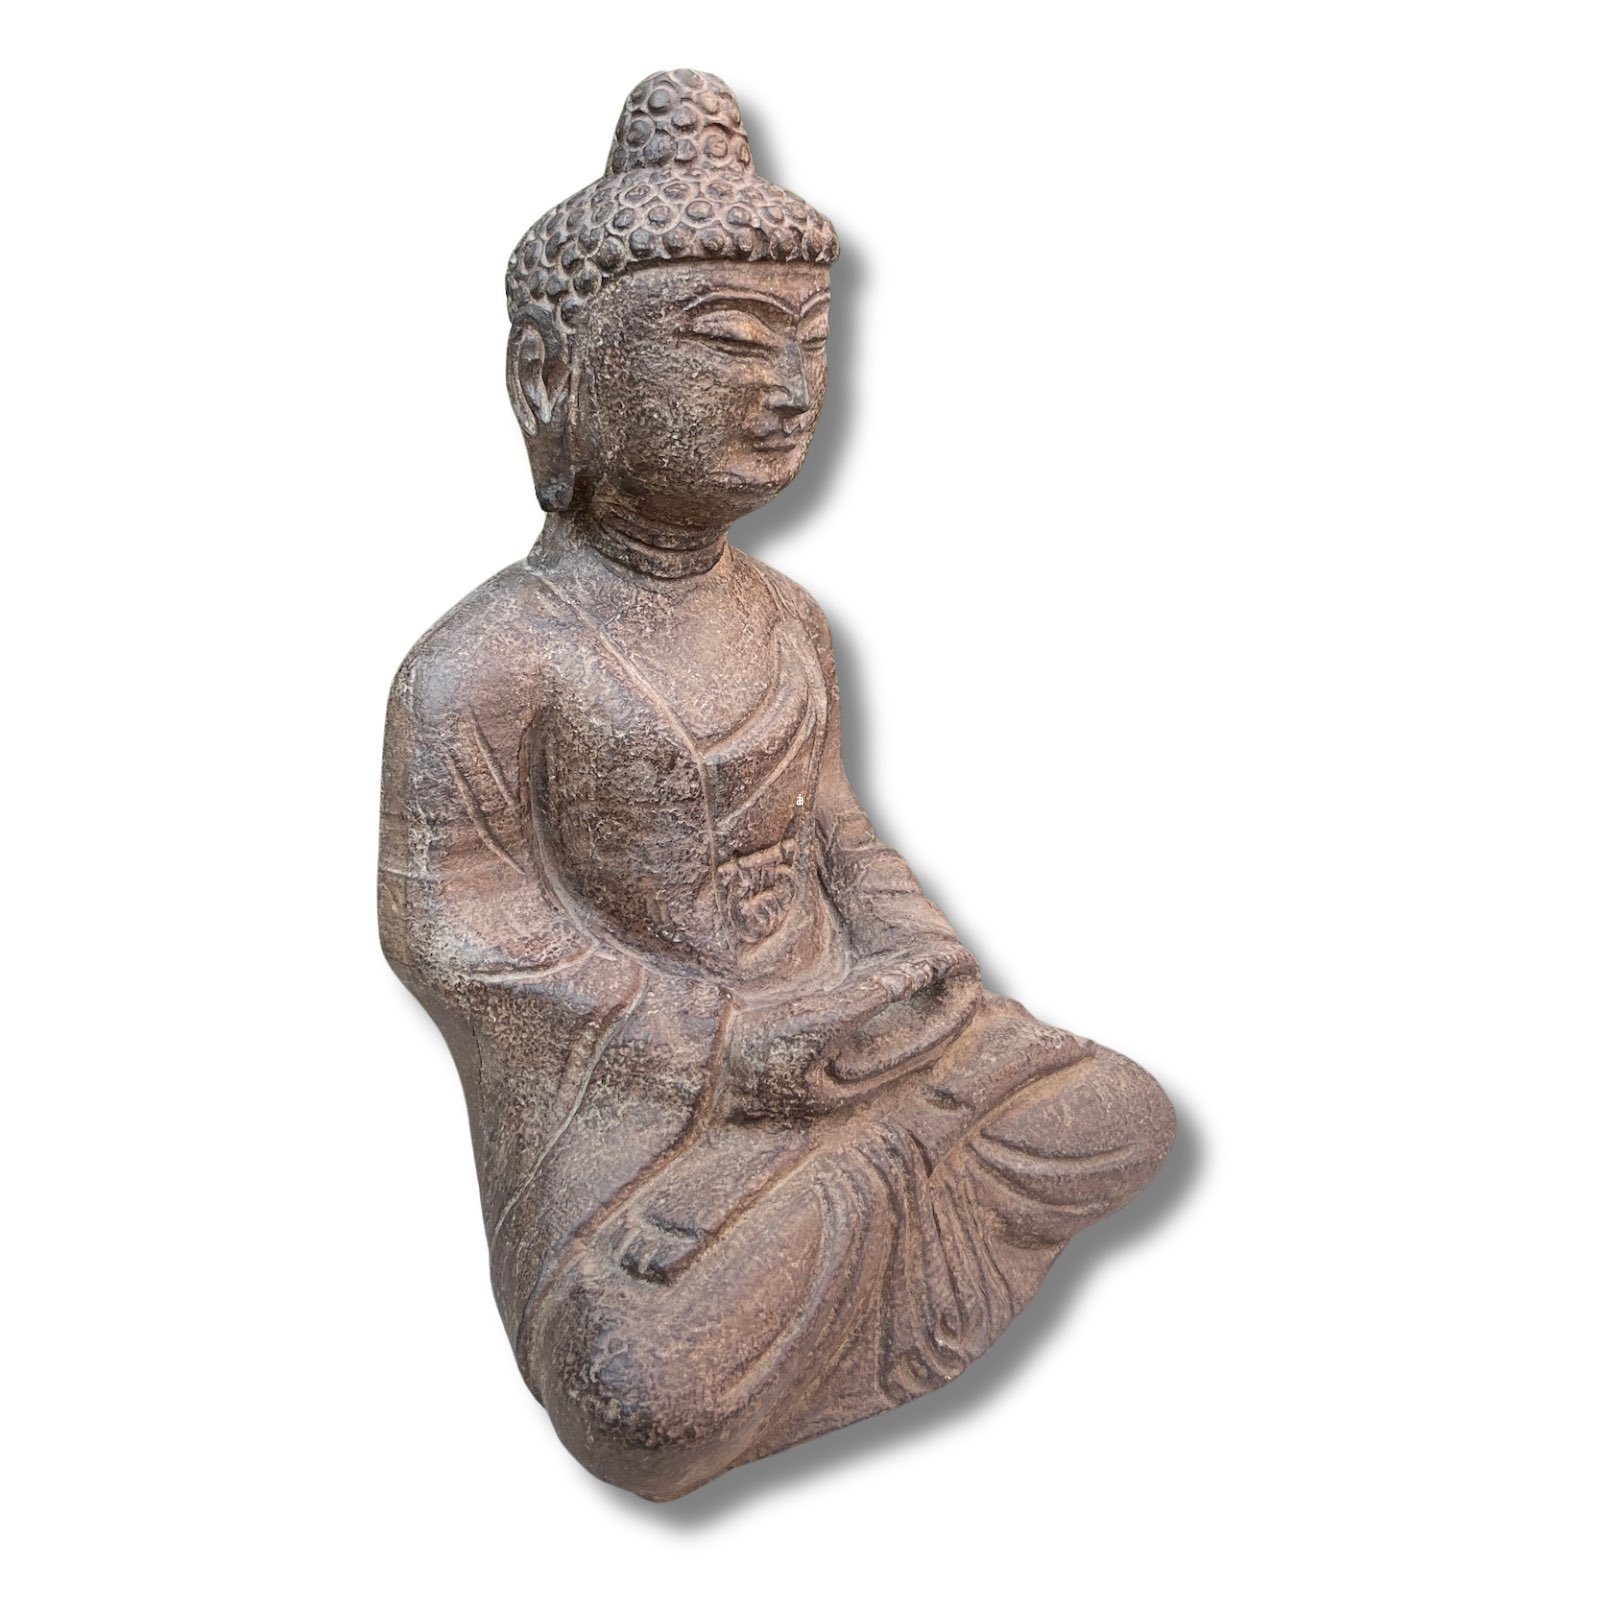 Asien LifeStyle Gartenfigur Buddha Garten Meditation Stein Figur Tibet China Naturstein